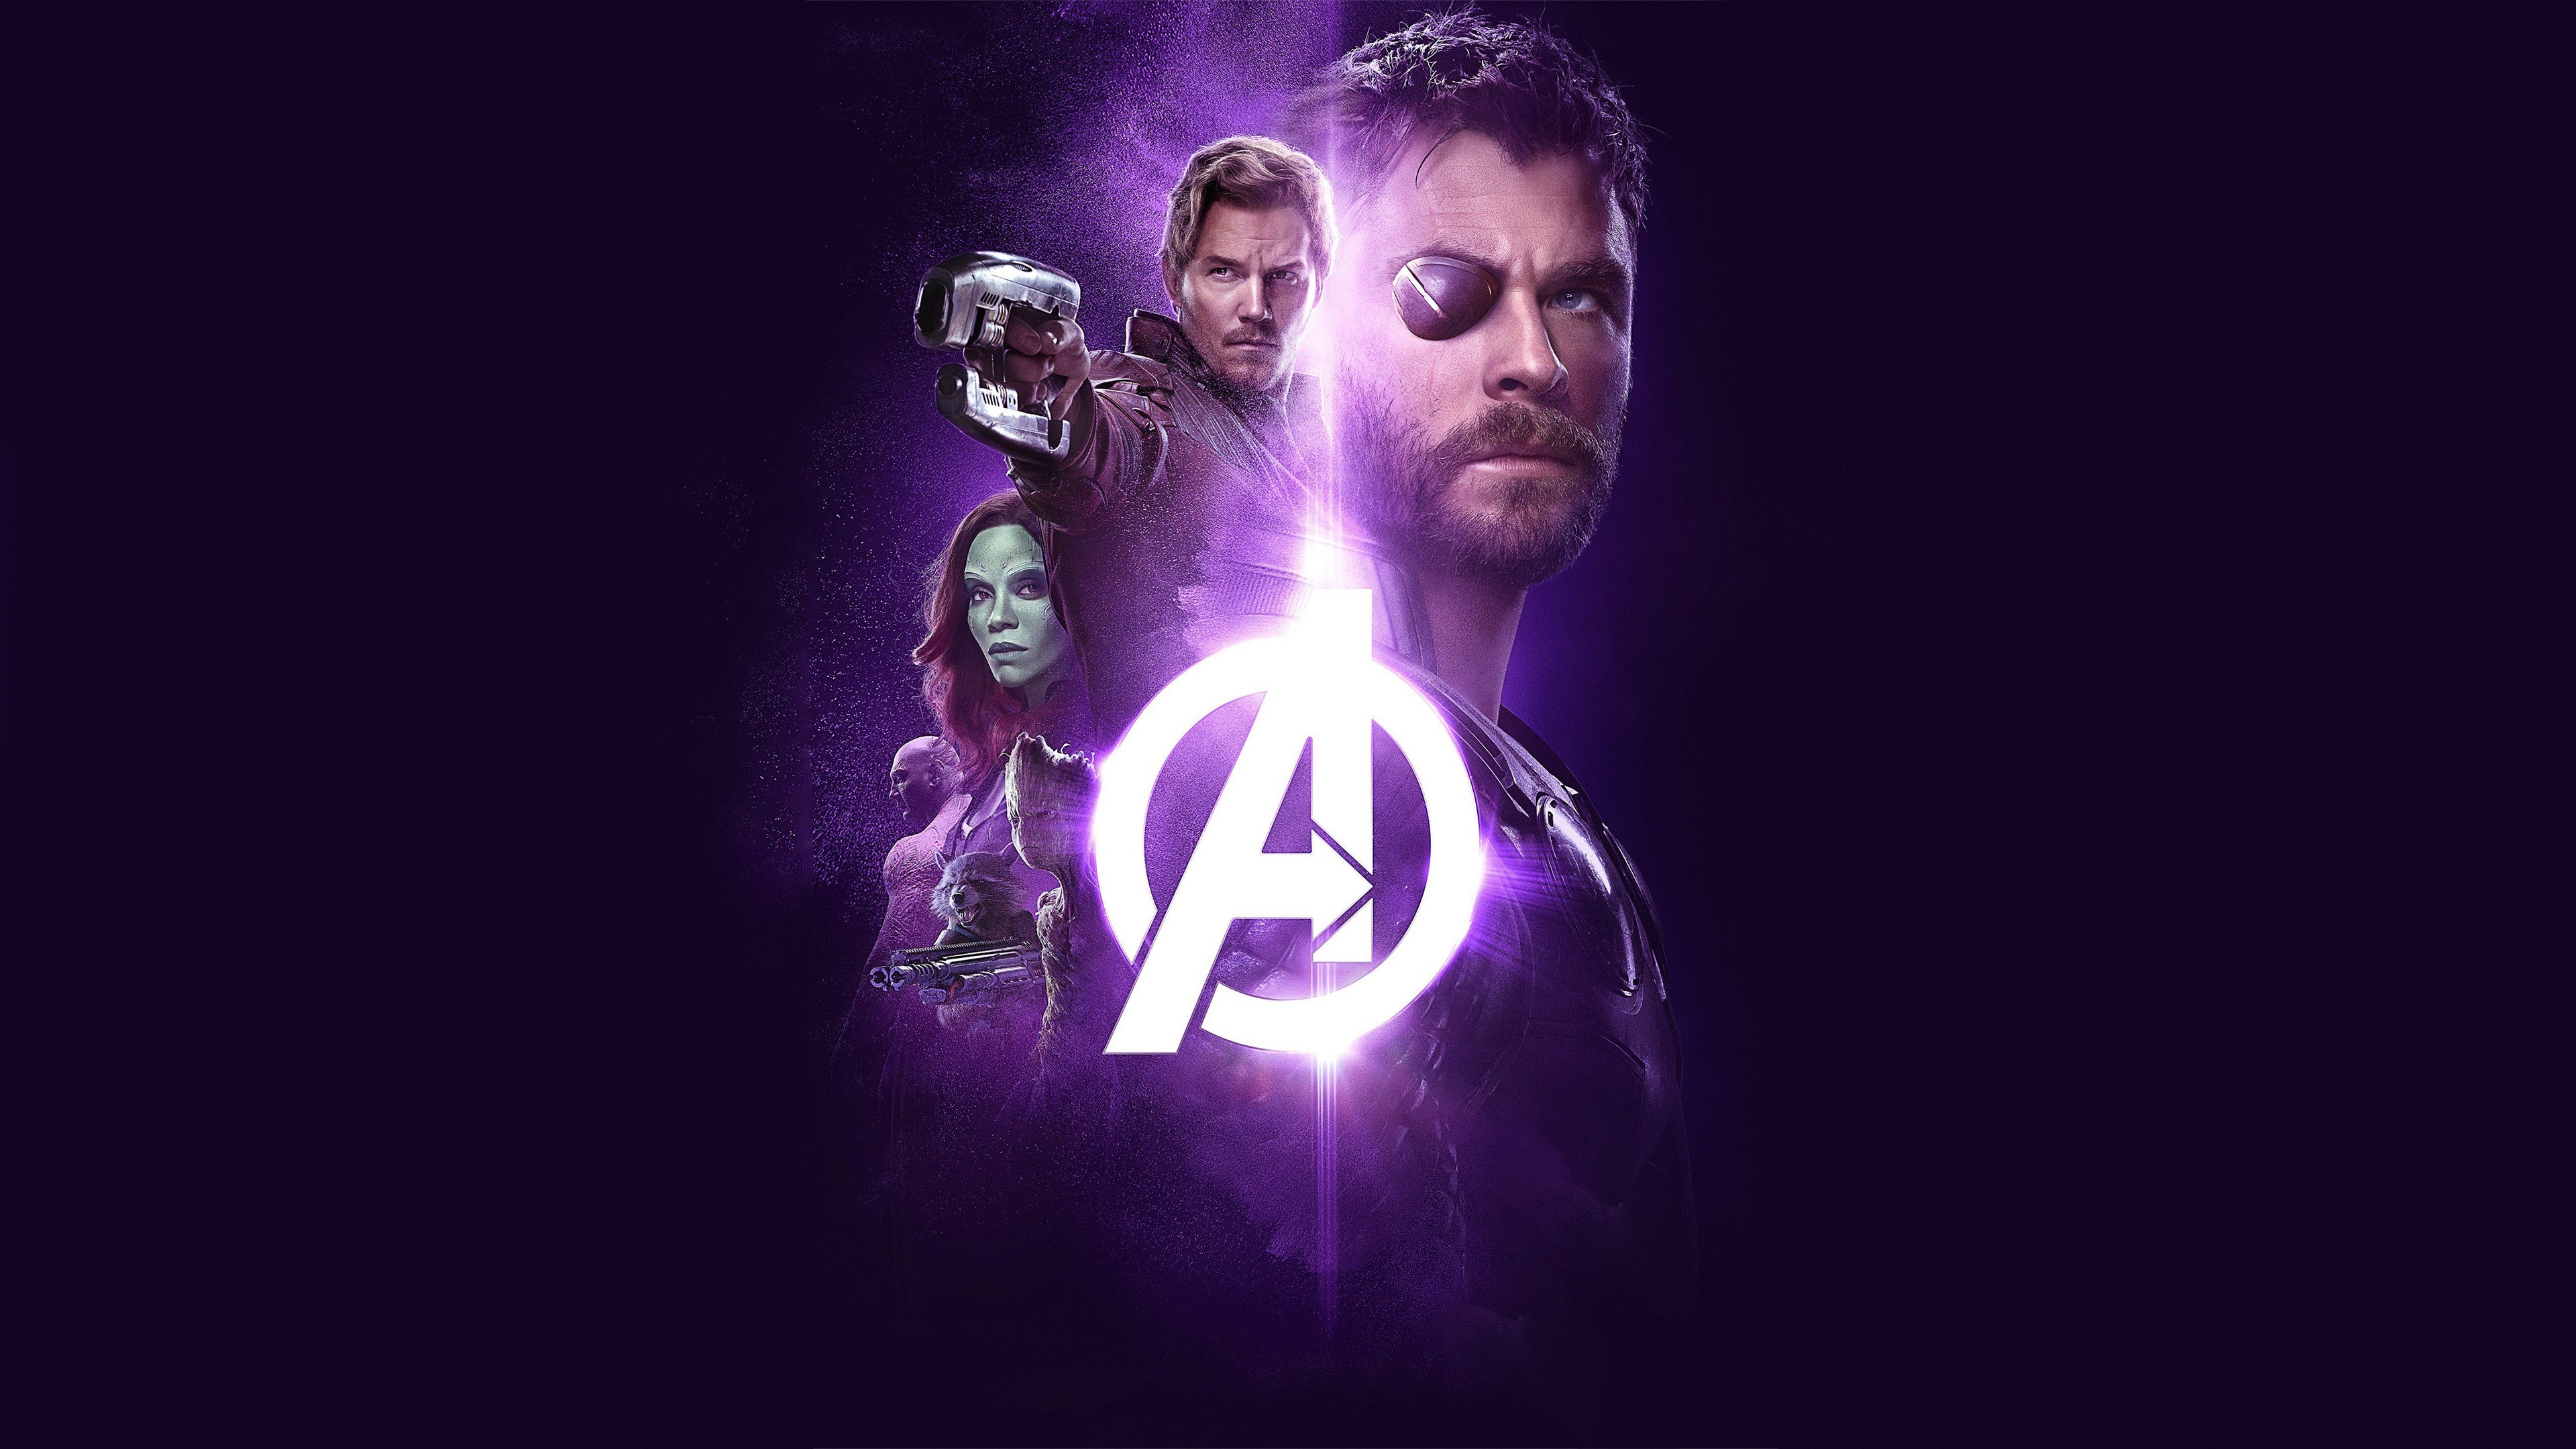 Wallpaper The Avengers - Ultra Hd Infinity War - HD Wallpaper 